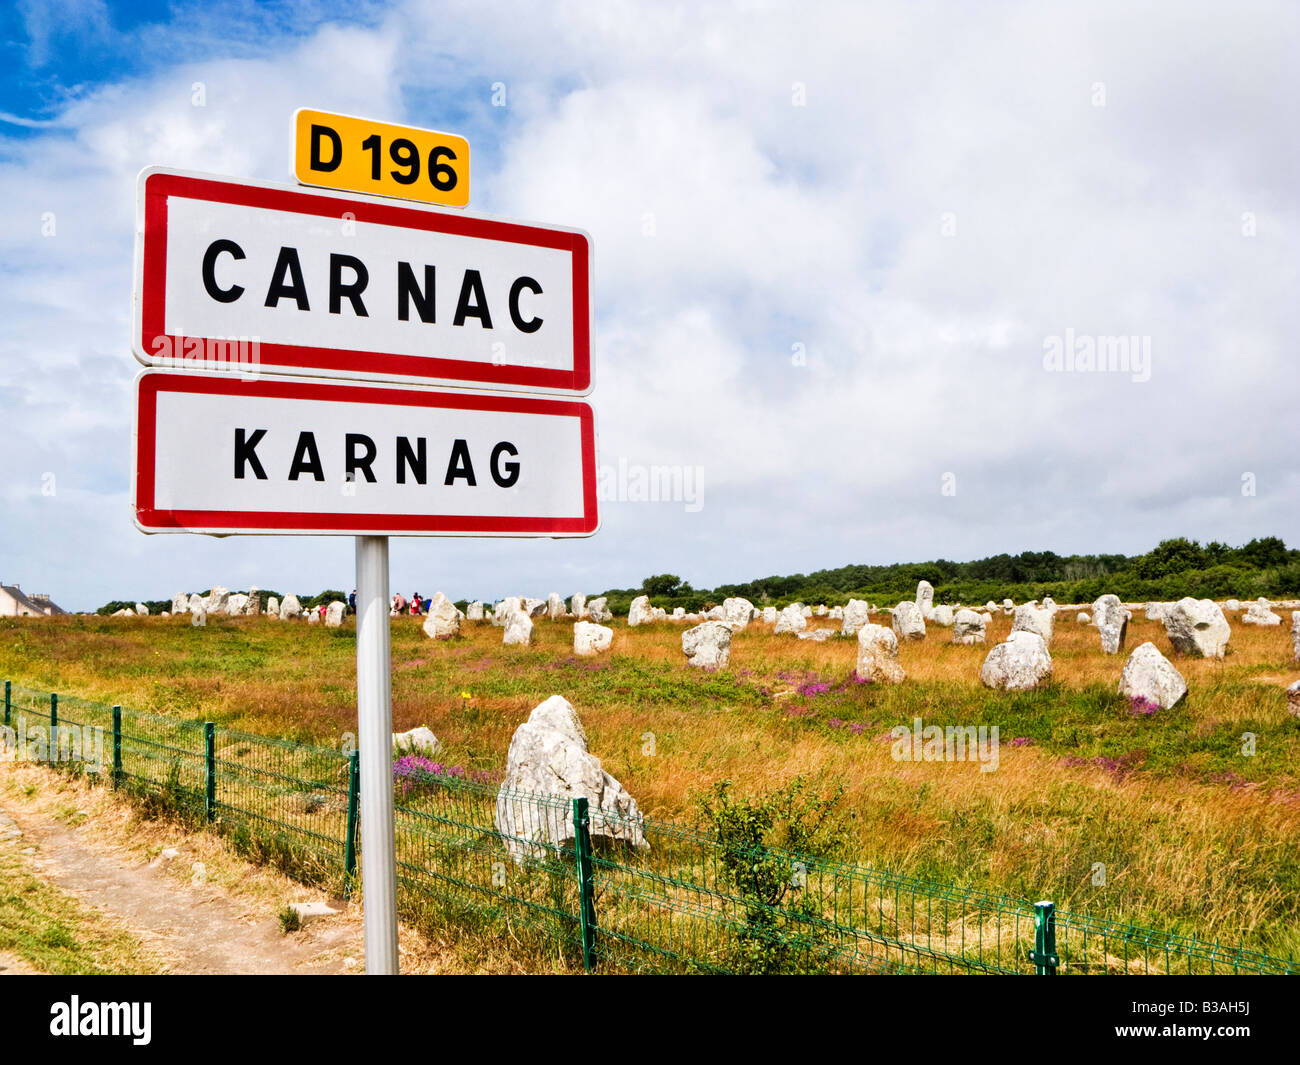 Carnac, Bretagne, Frankreich - Alignements du Menec Menhire mit Straßenschild in den Sprachen Französisch und Bretonisch Stockfoto